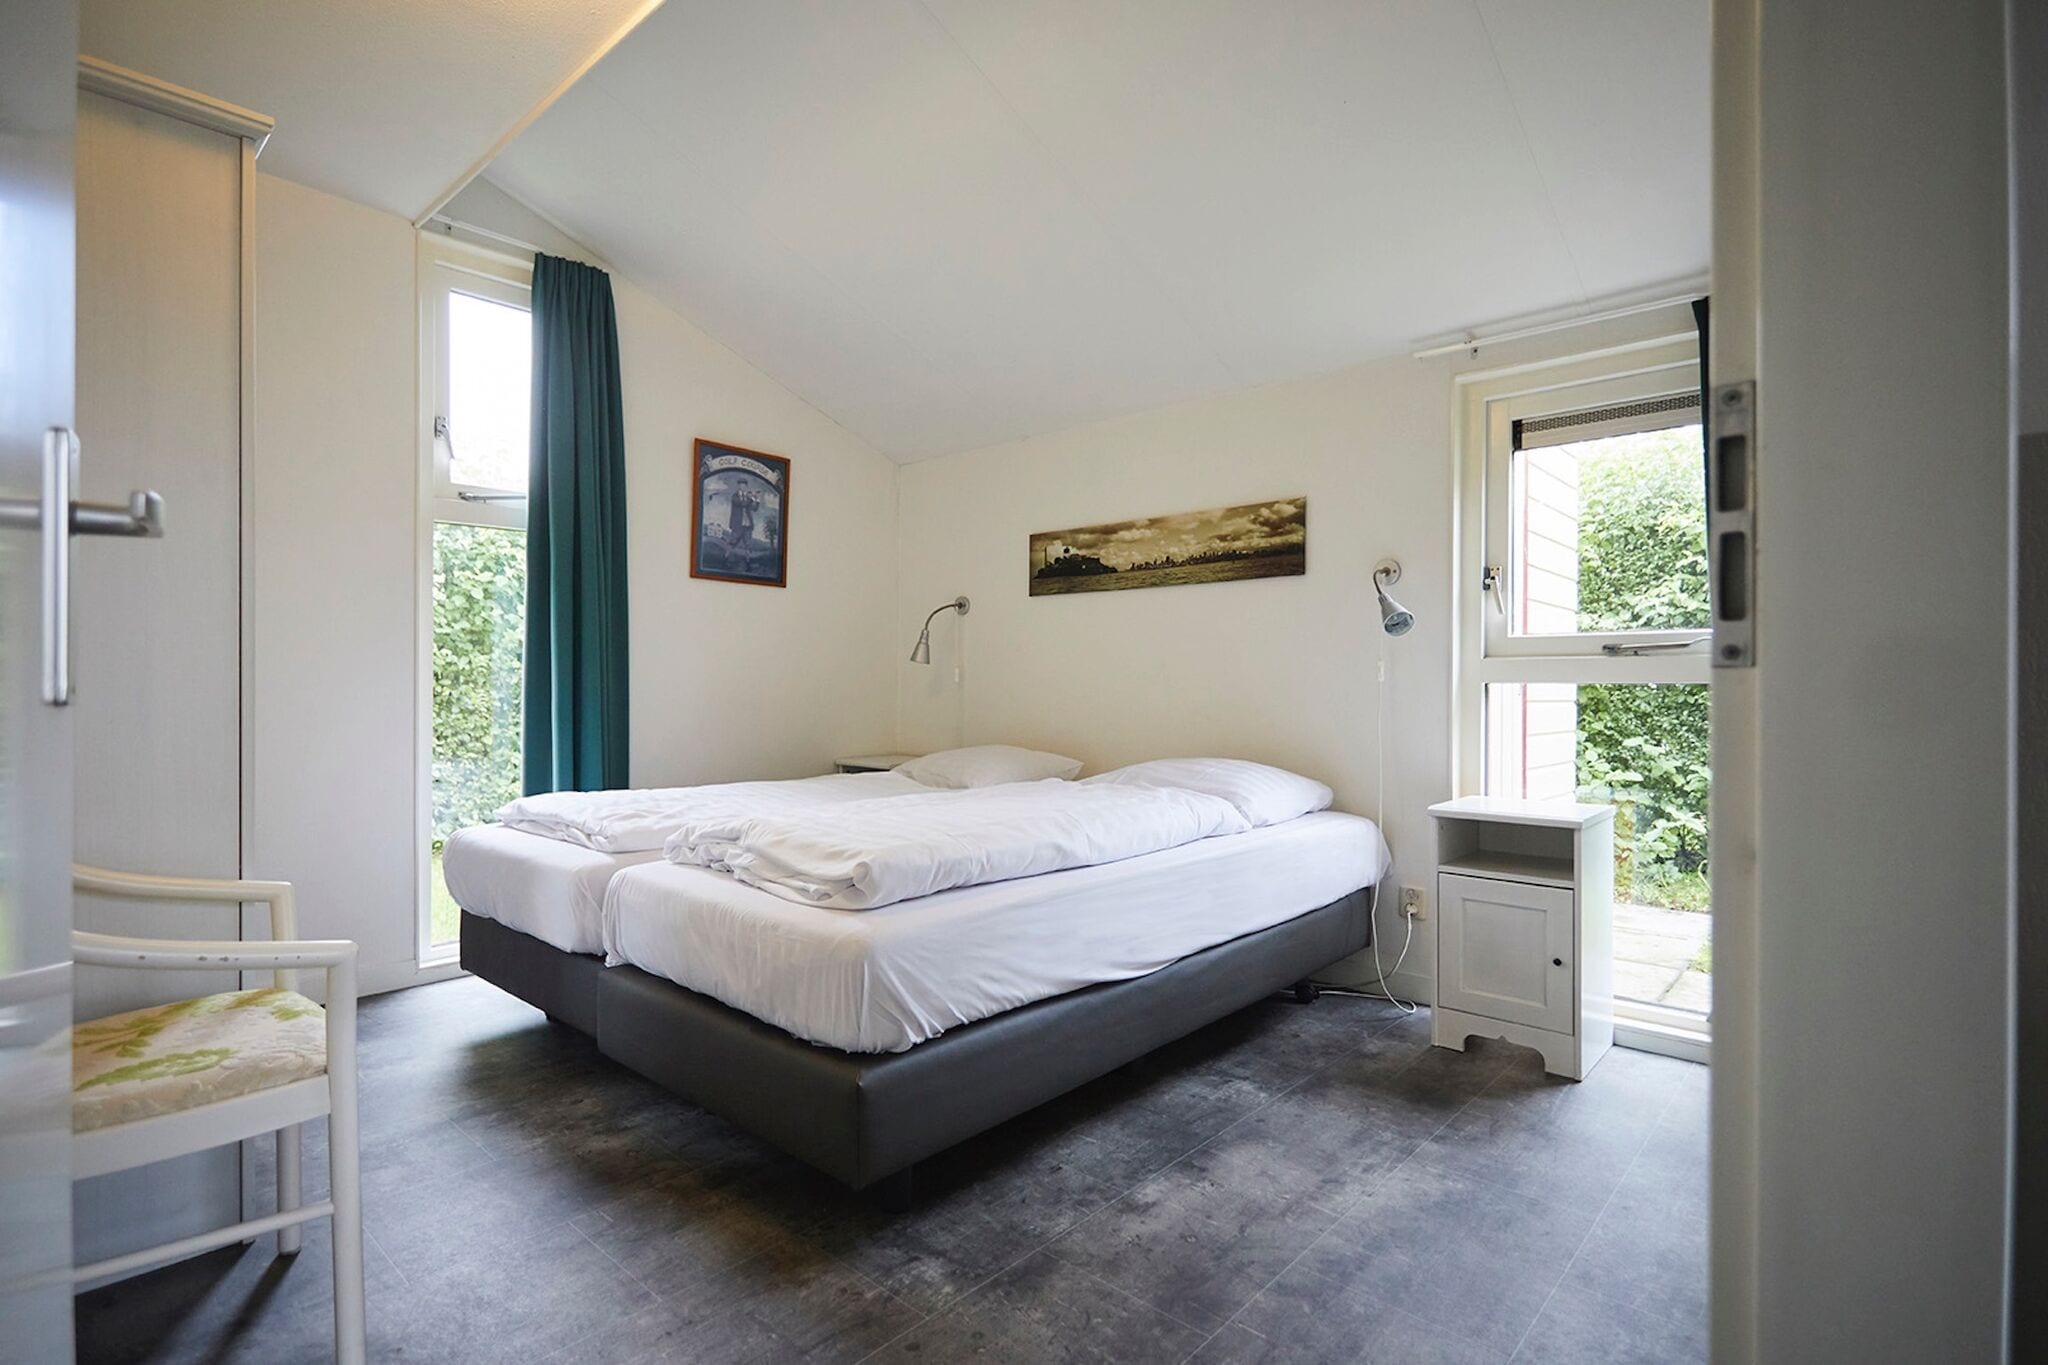 Mooi vakantiehuis met wellness, gelegen in Zeeland